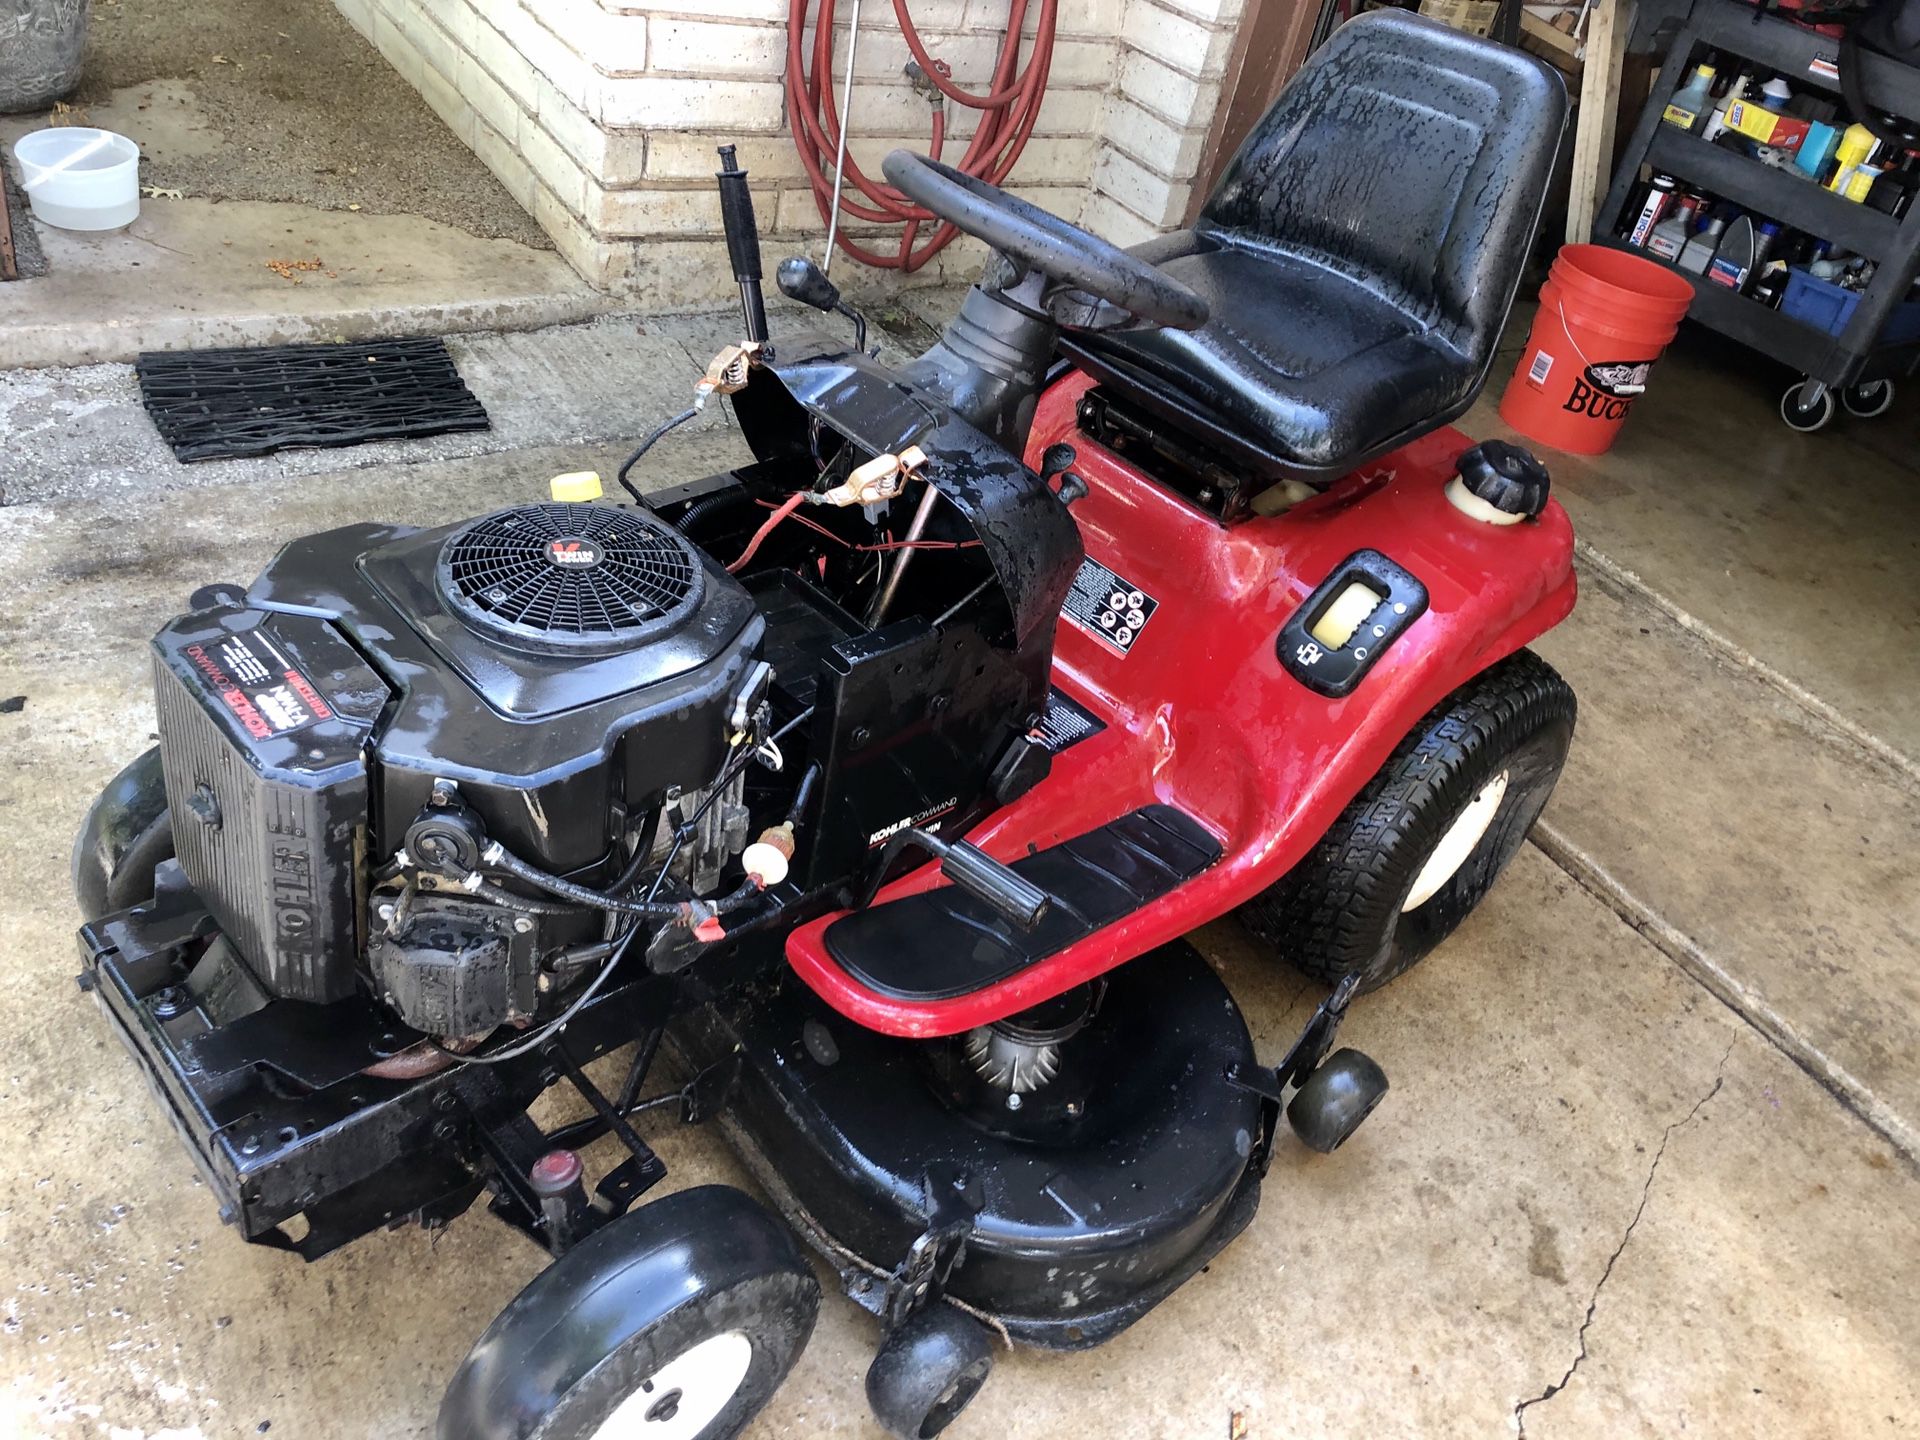 Craftsman 42” riding lawn mower with Kohler 20hp motor